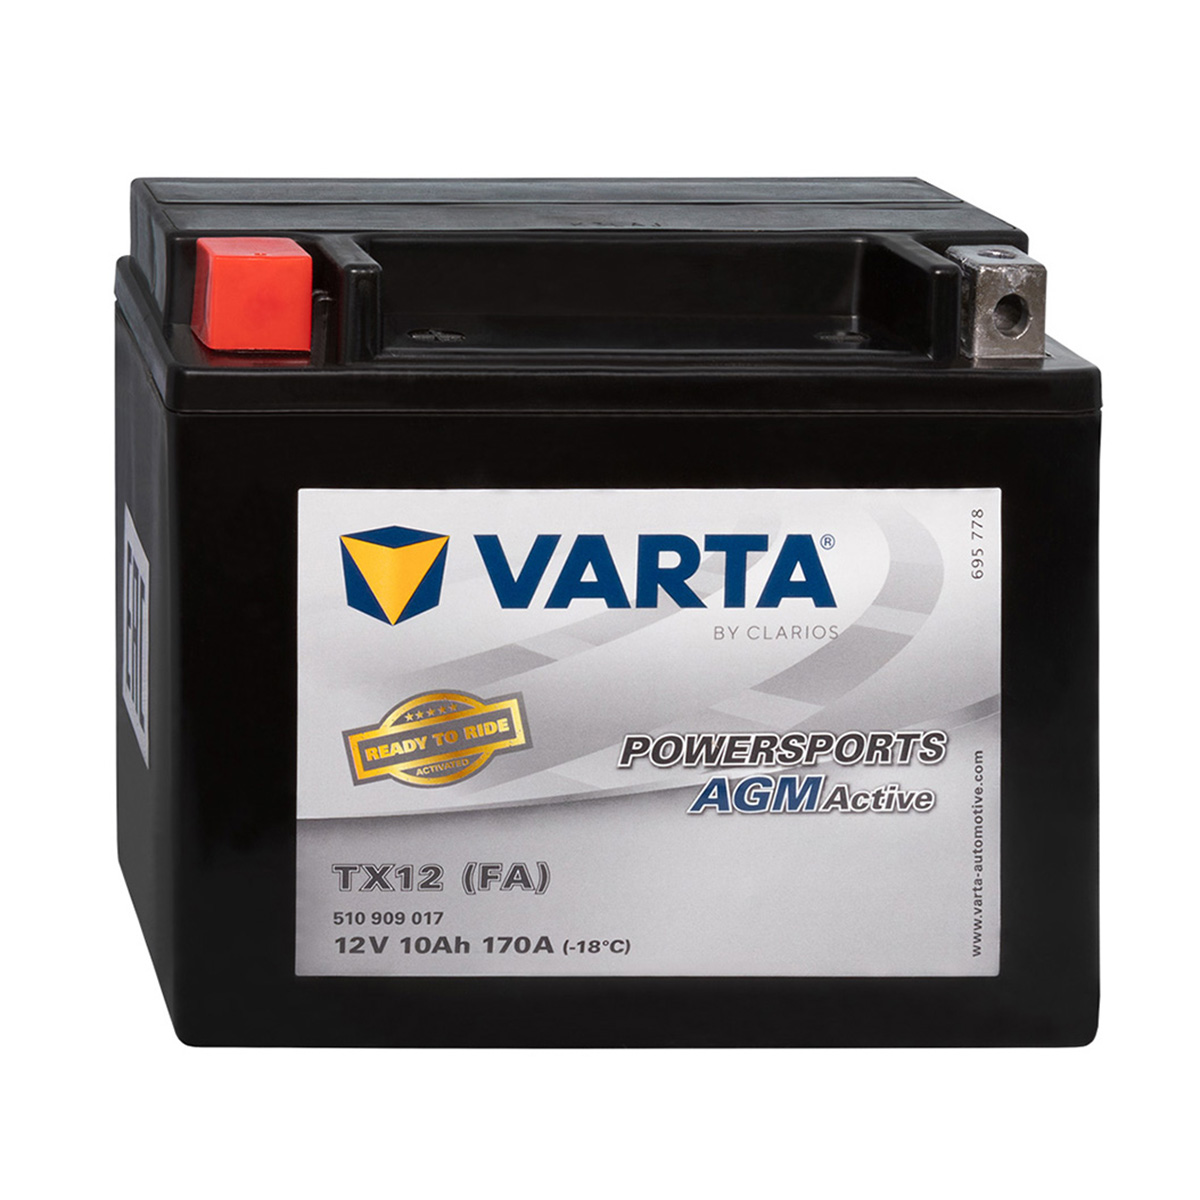 Varta TX12 12V 10Ah Powersports AGM Motorradbatterie